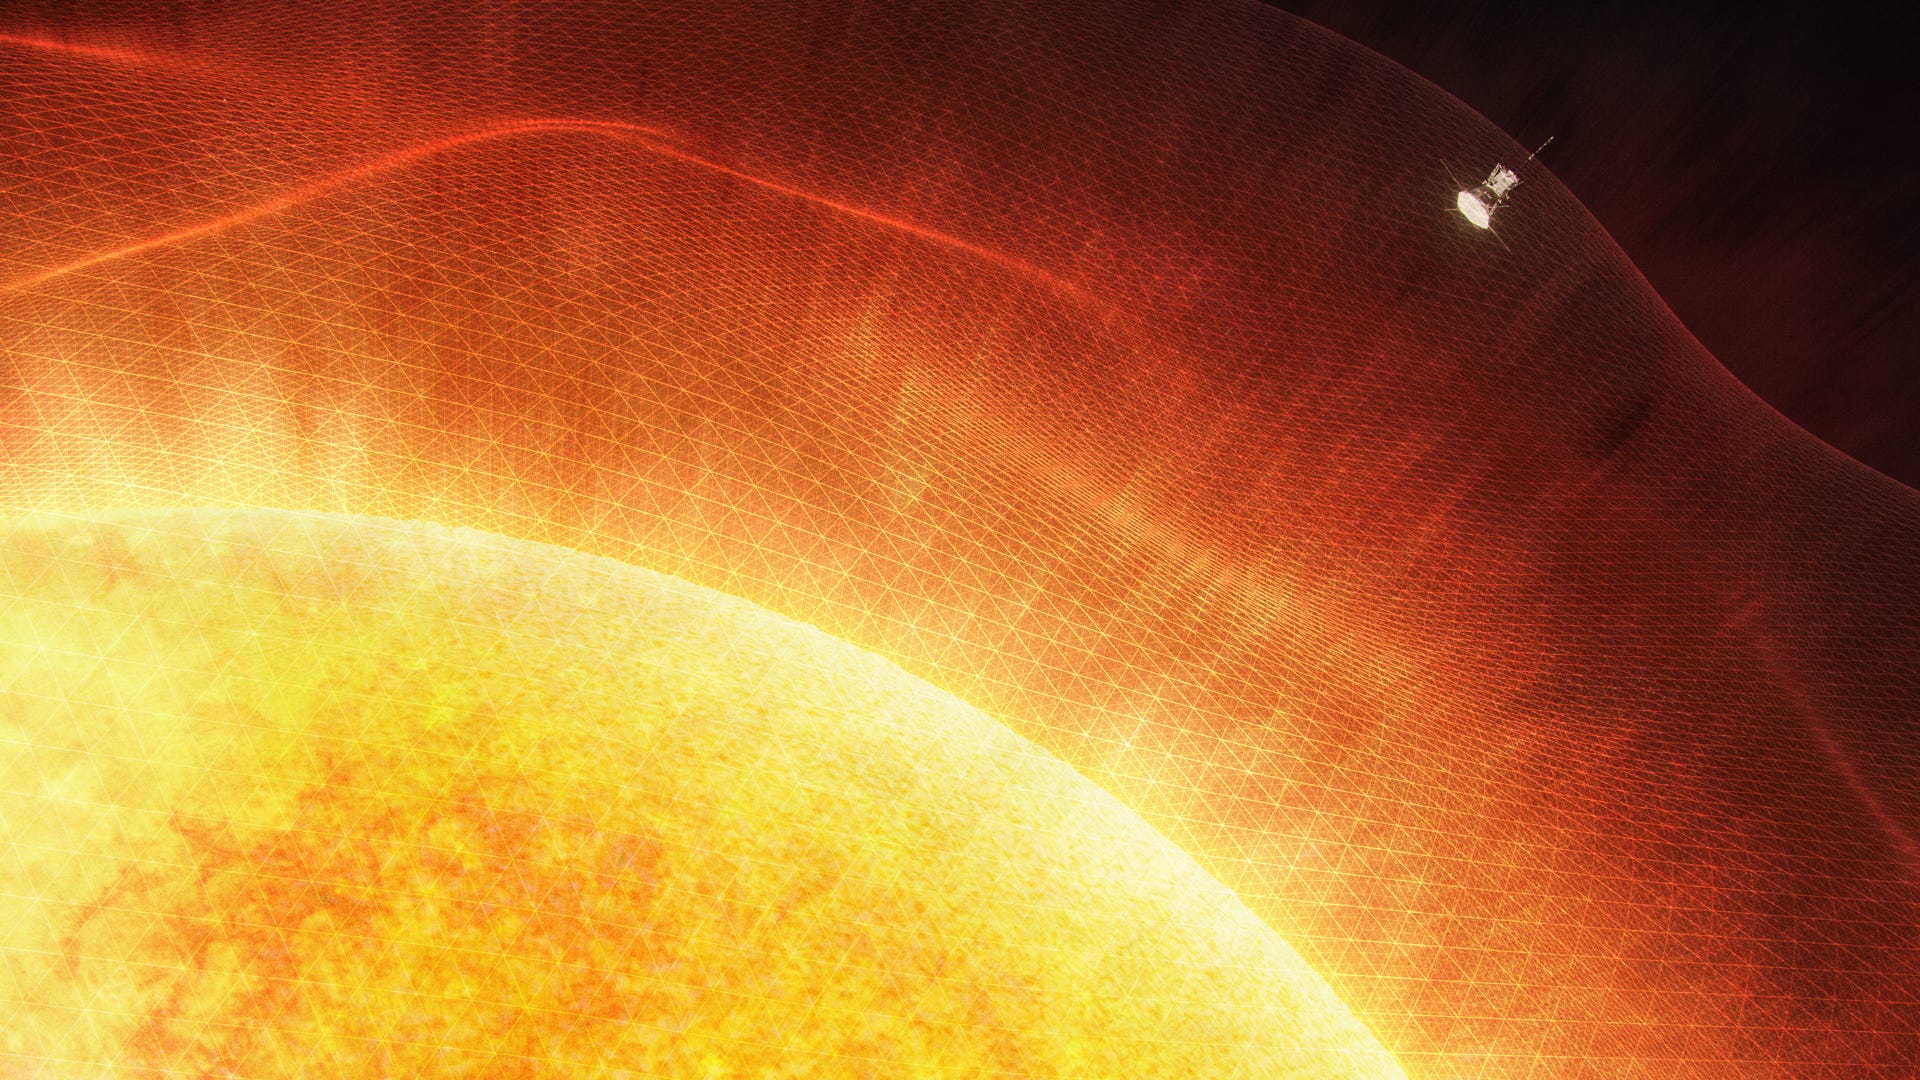 NASA mạnh dạn đi đến nơi chưa từng có ai đi qua — Mặt trời